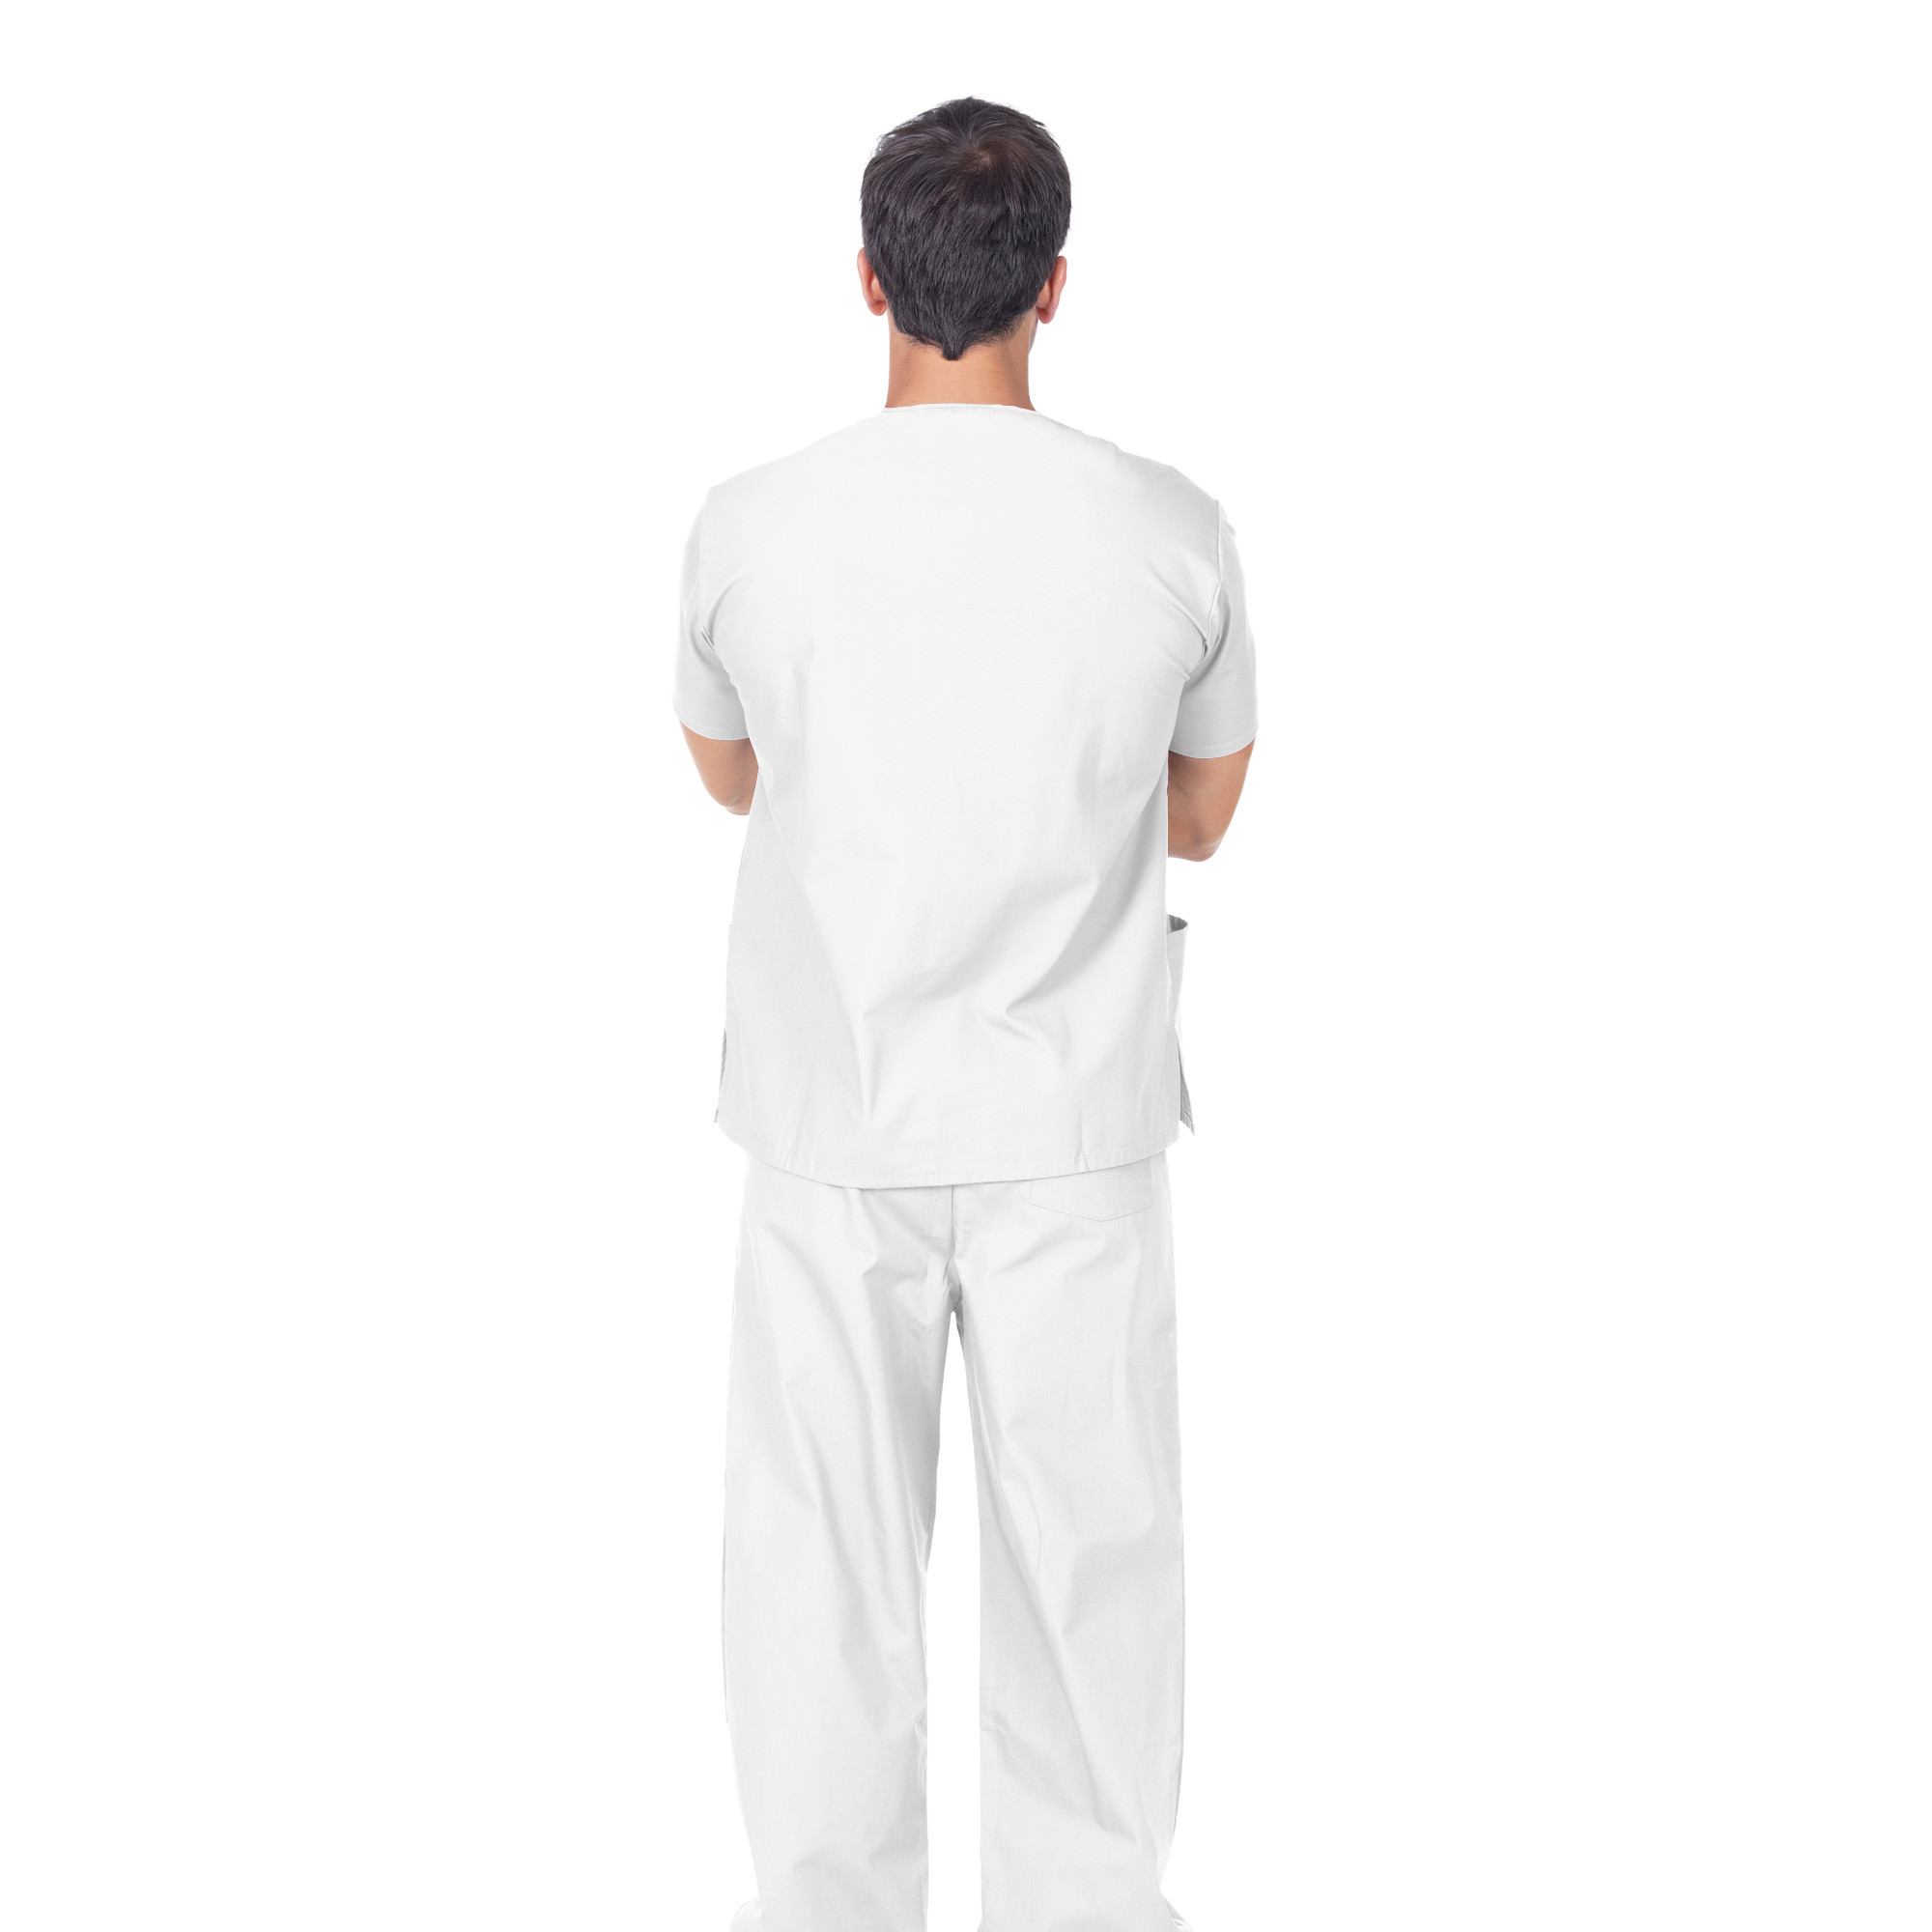 Pantalon professionnel en coton blanc Unisex taille XL